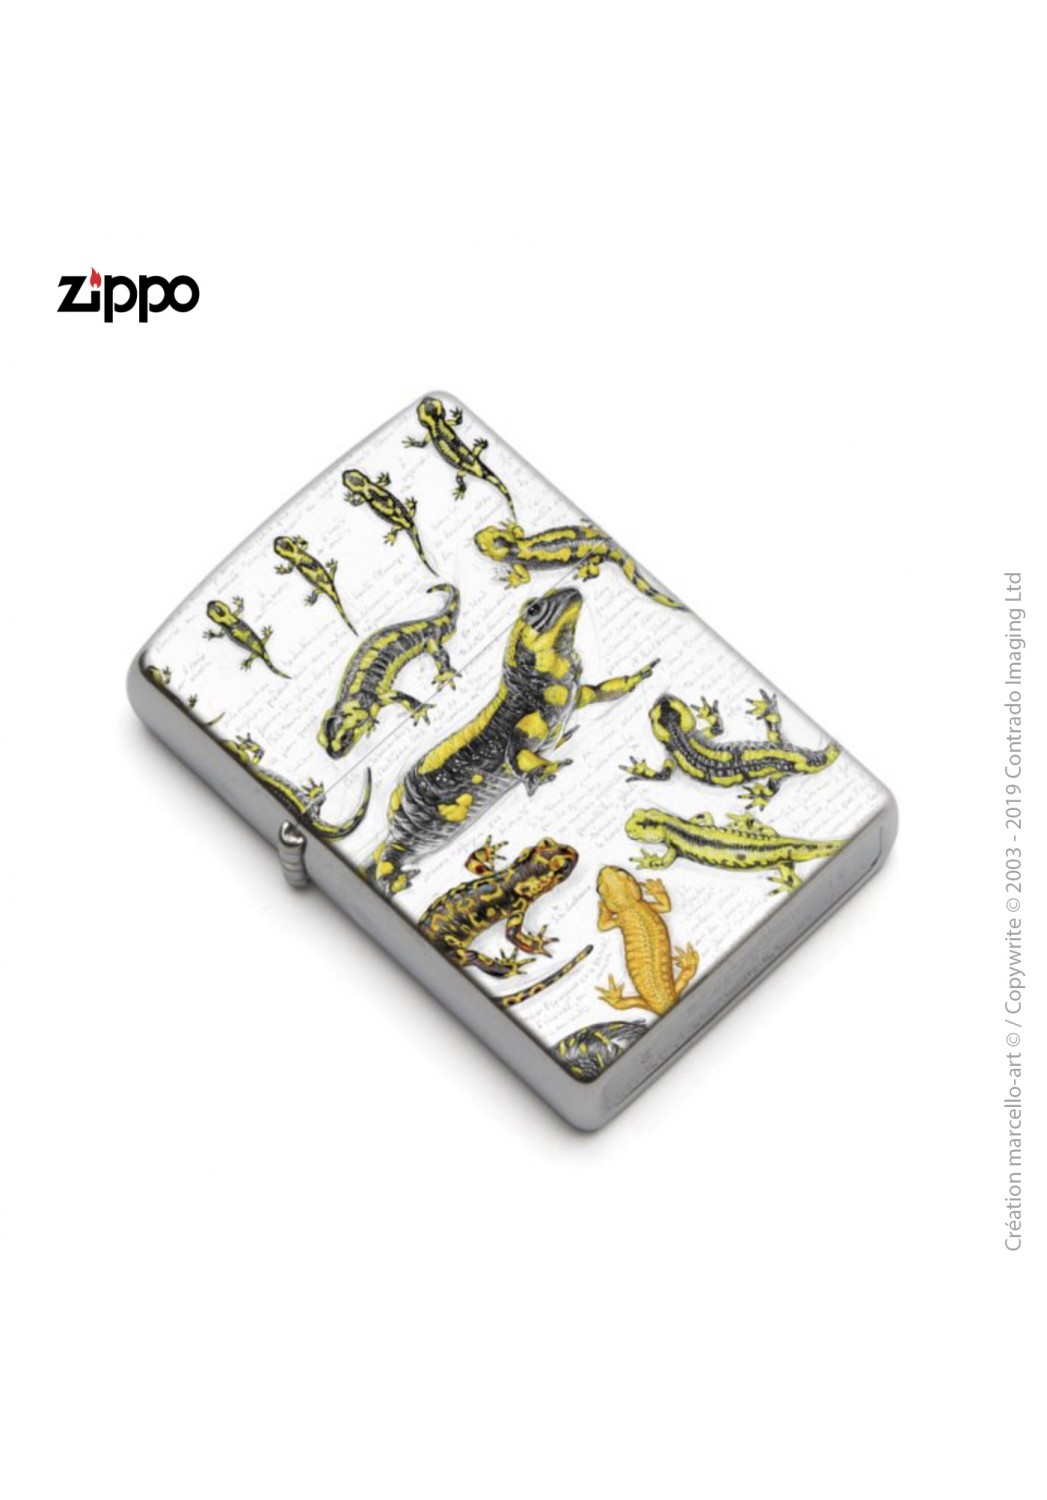 Marcello-art : Accessoires de décoration Zippo 383 A salamandre